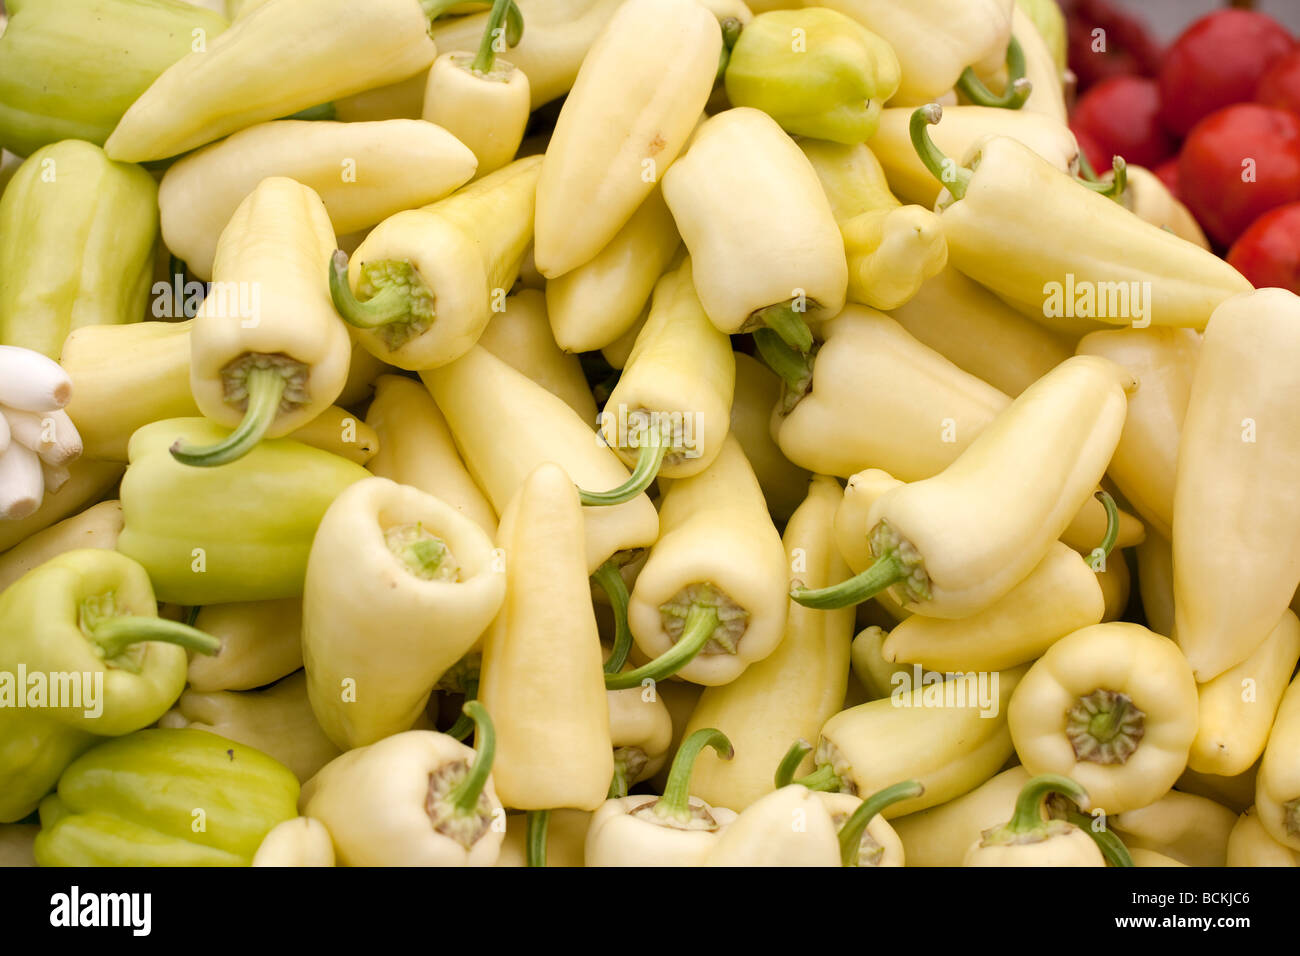 Poivron vert et jaune sont vendus au marché des légumes Banque D'Images